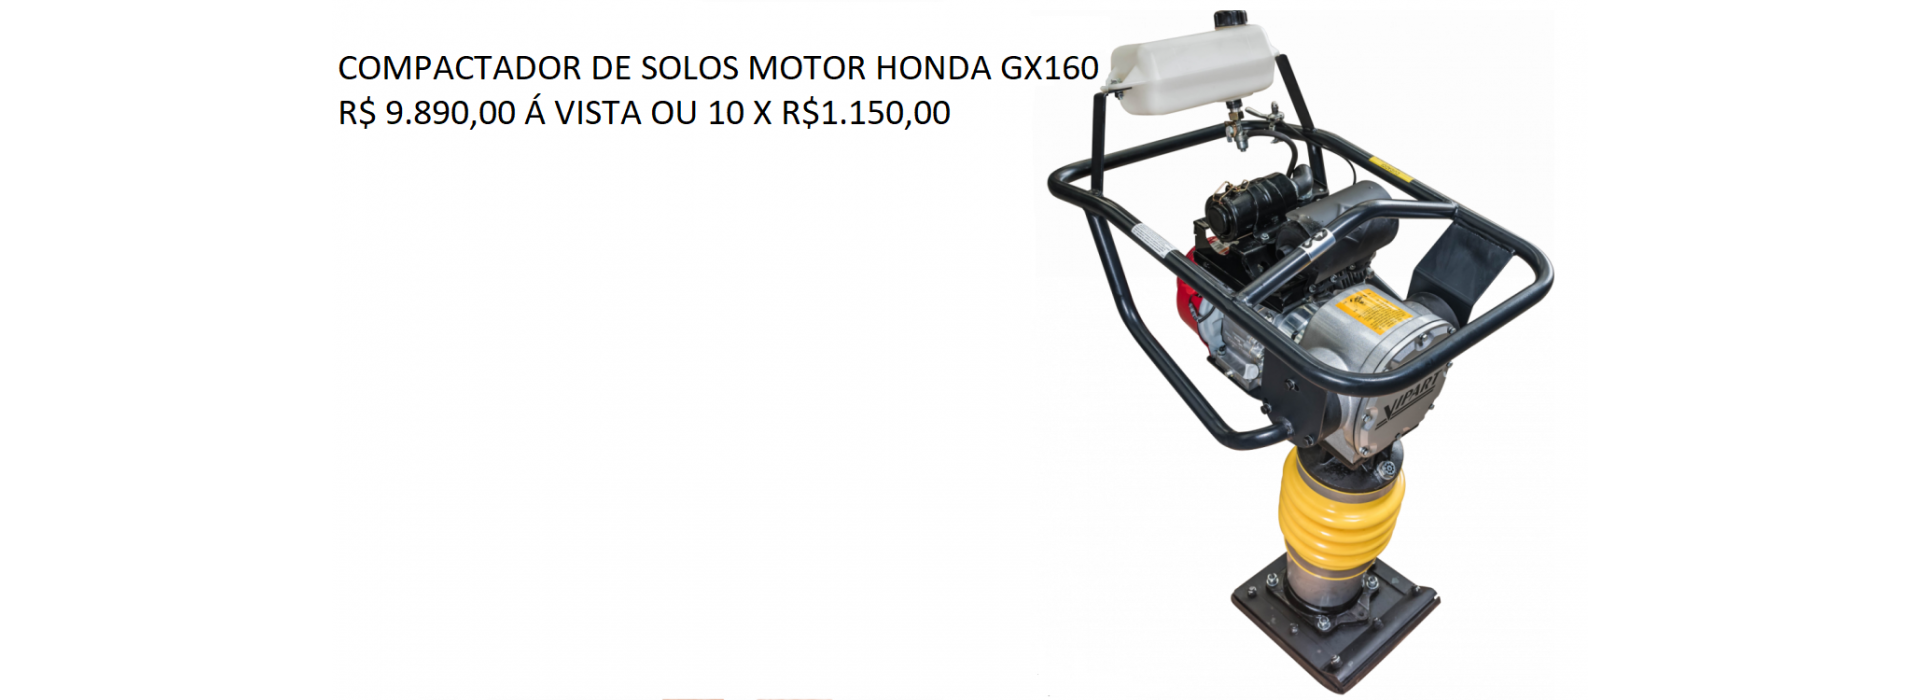 Compactador de solos Honda GX160